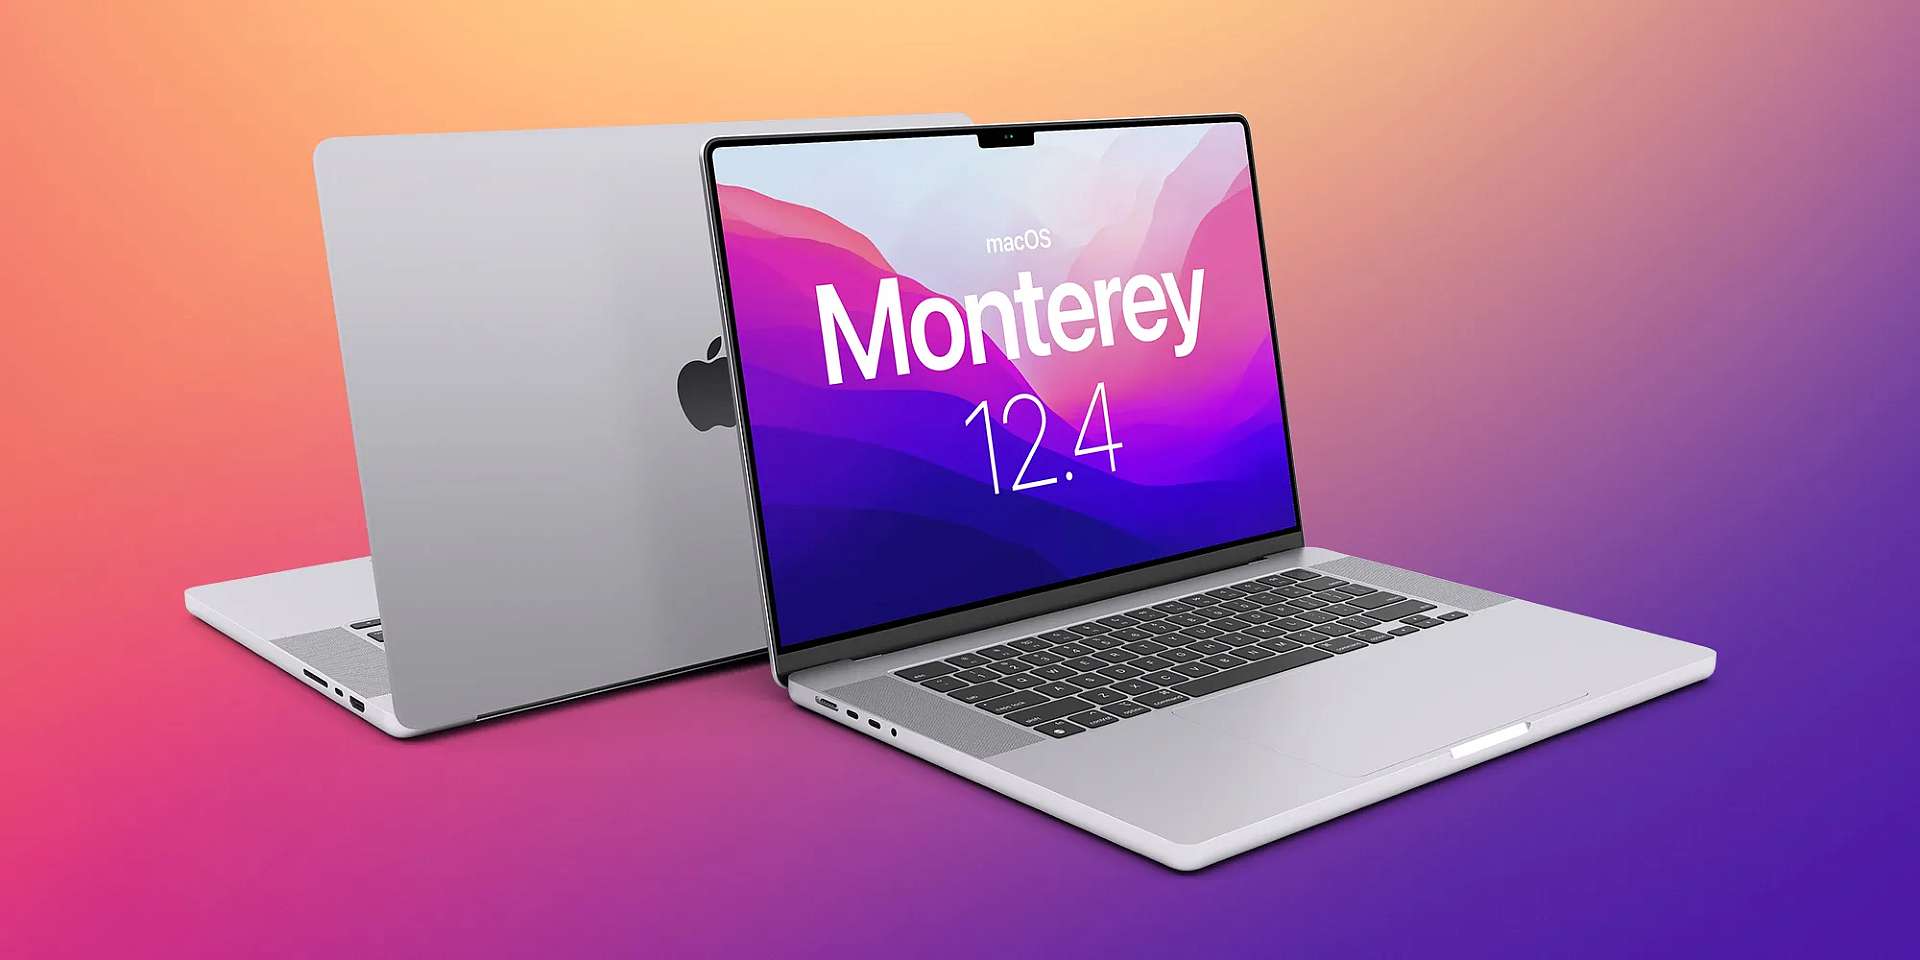 macOS 12.4 Monterey update: New features